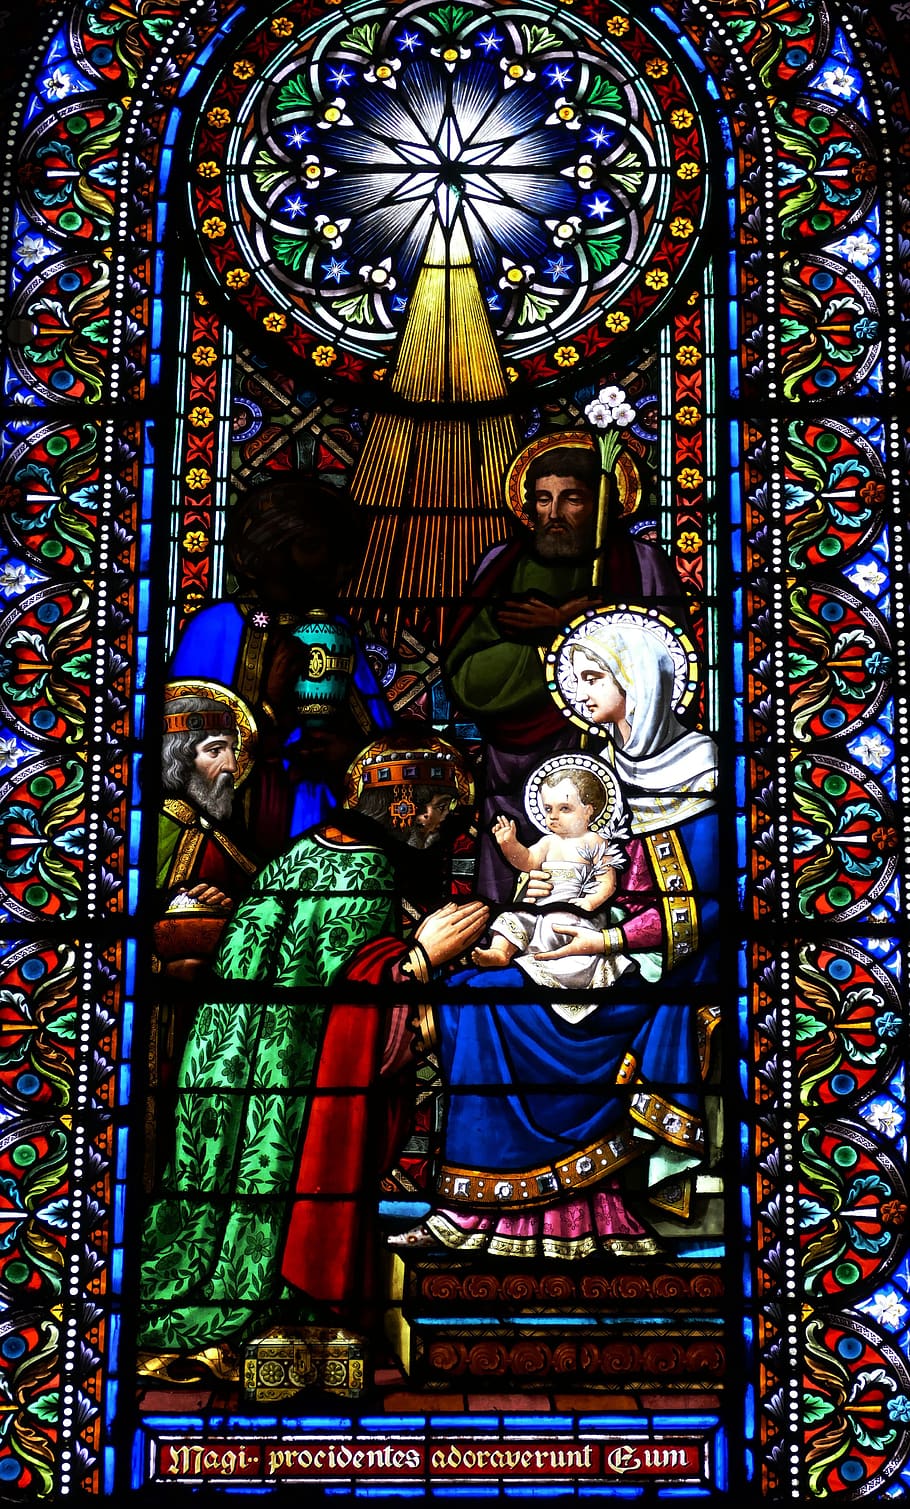 ventana de la iglesia, vidrieras, iglesia, cristianismo, fe, maria, cristiano, arte, navidad, montserrat